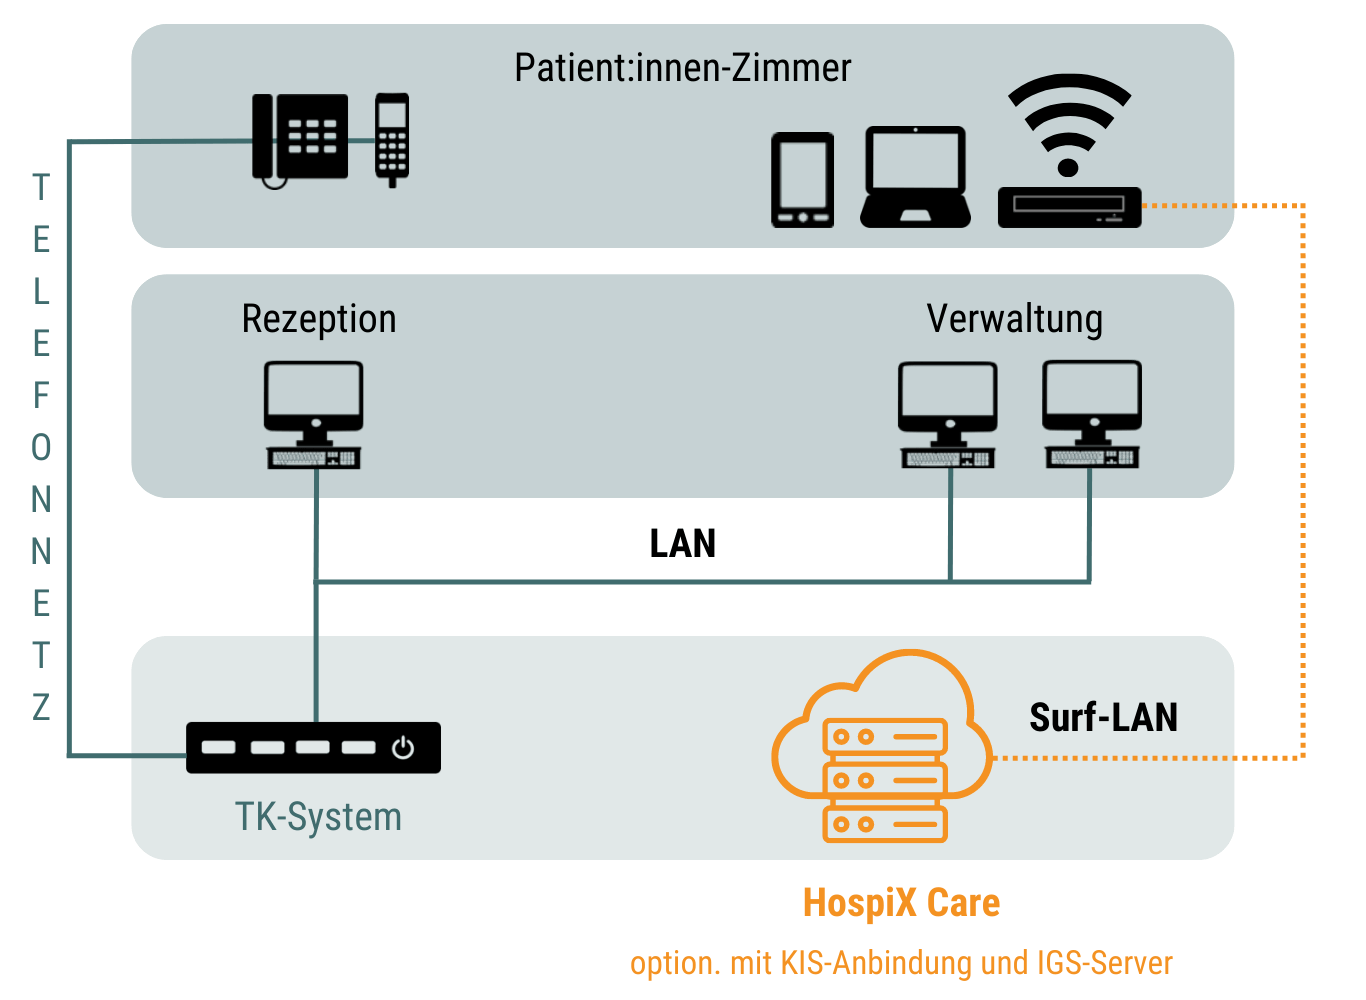 MSI HospiX - Funktionen der Kommunikationslösung im Krankenhaus